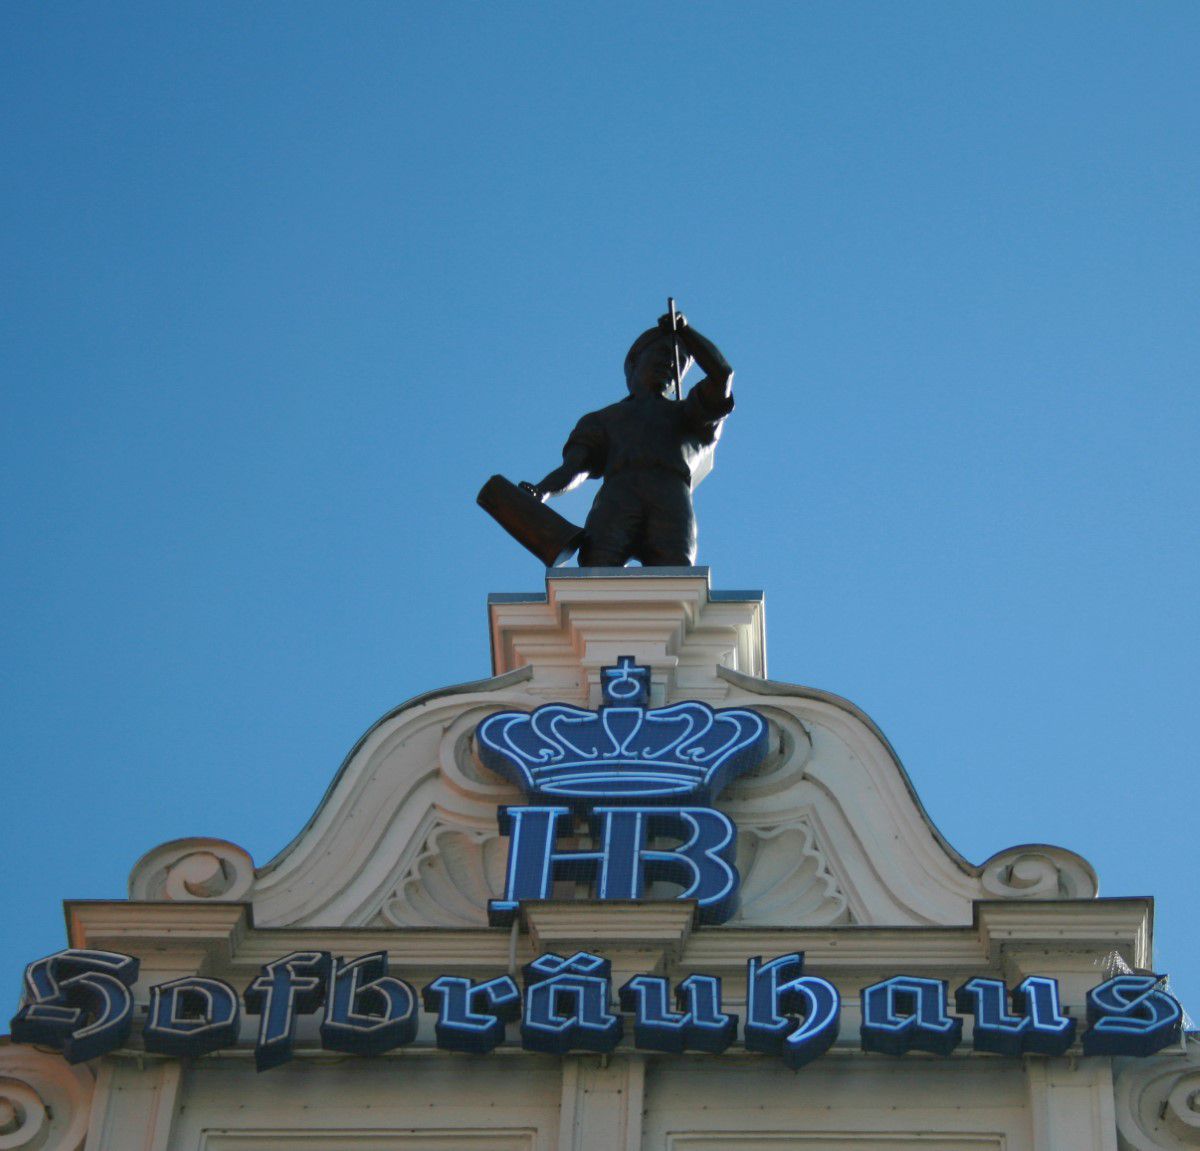 Hofbräuhaus von Außen mit Logo, Schriftzug und Statue ganz oben